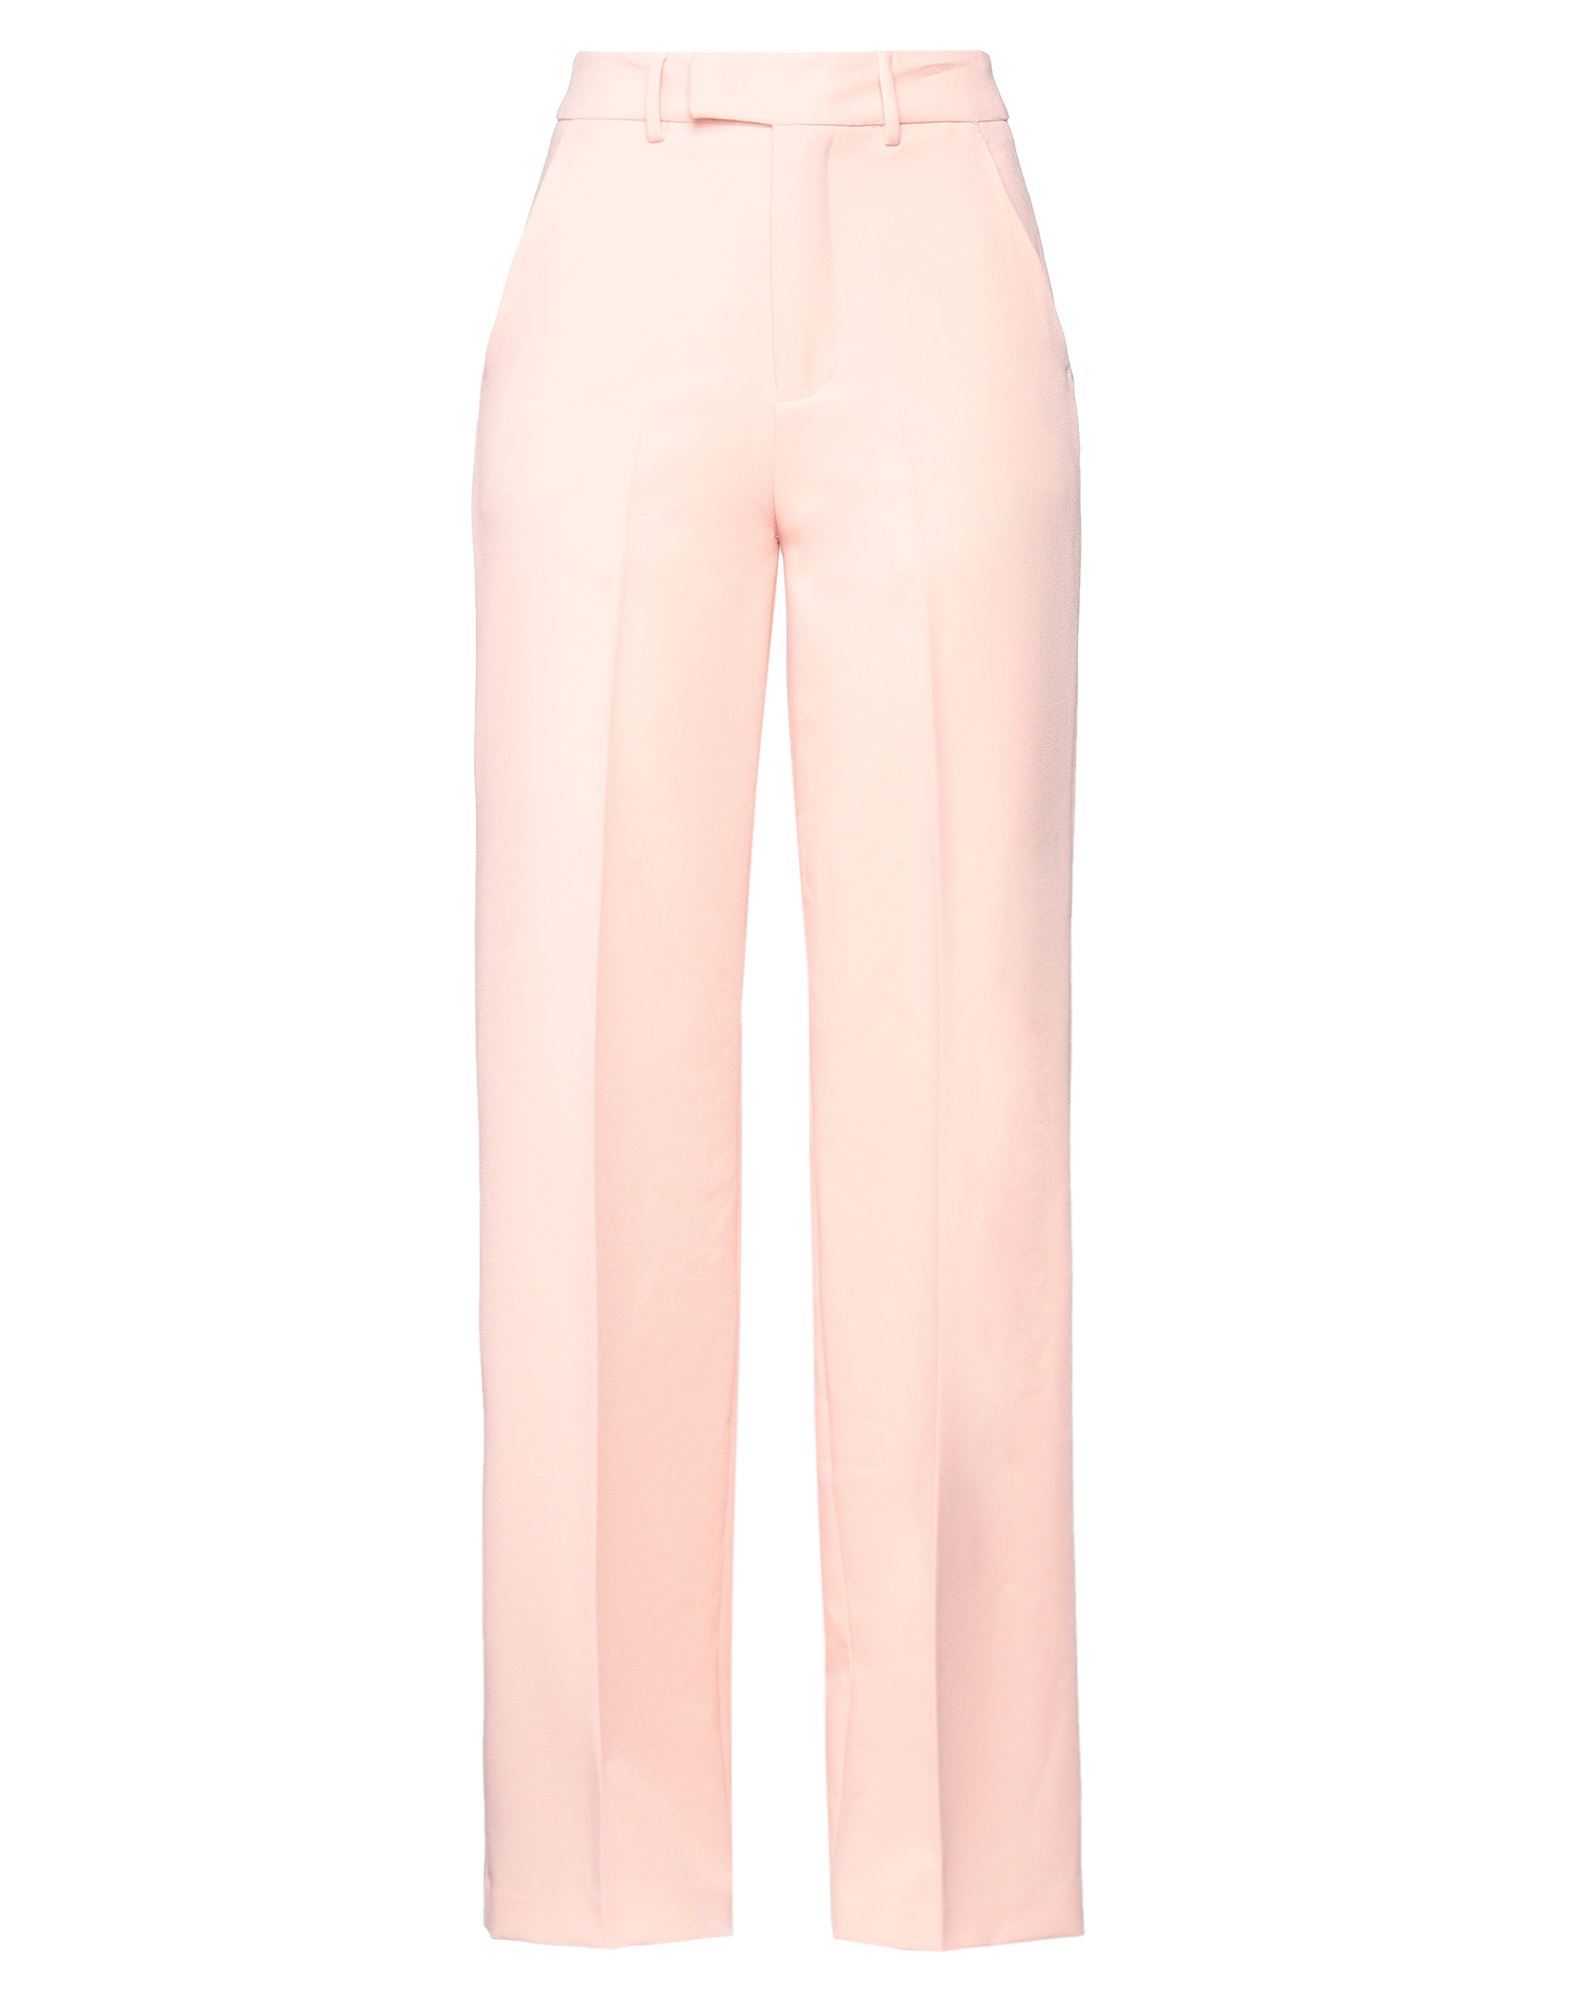 Gaelle Paris Pants In Pink